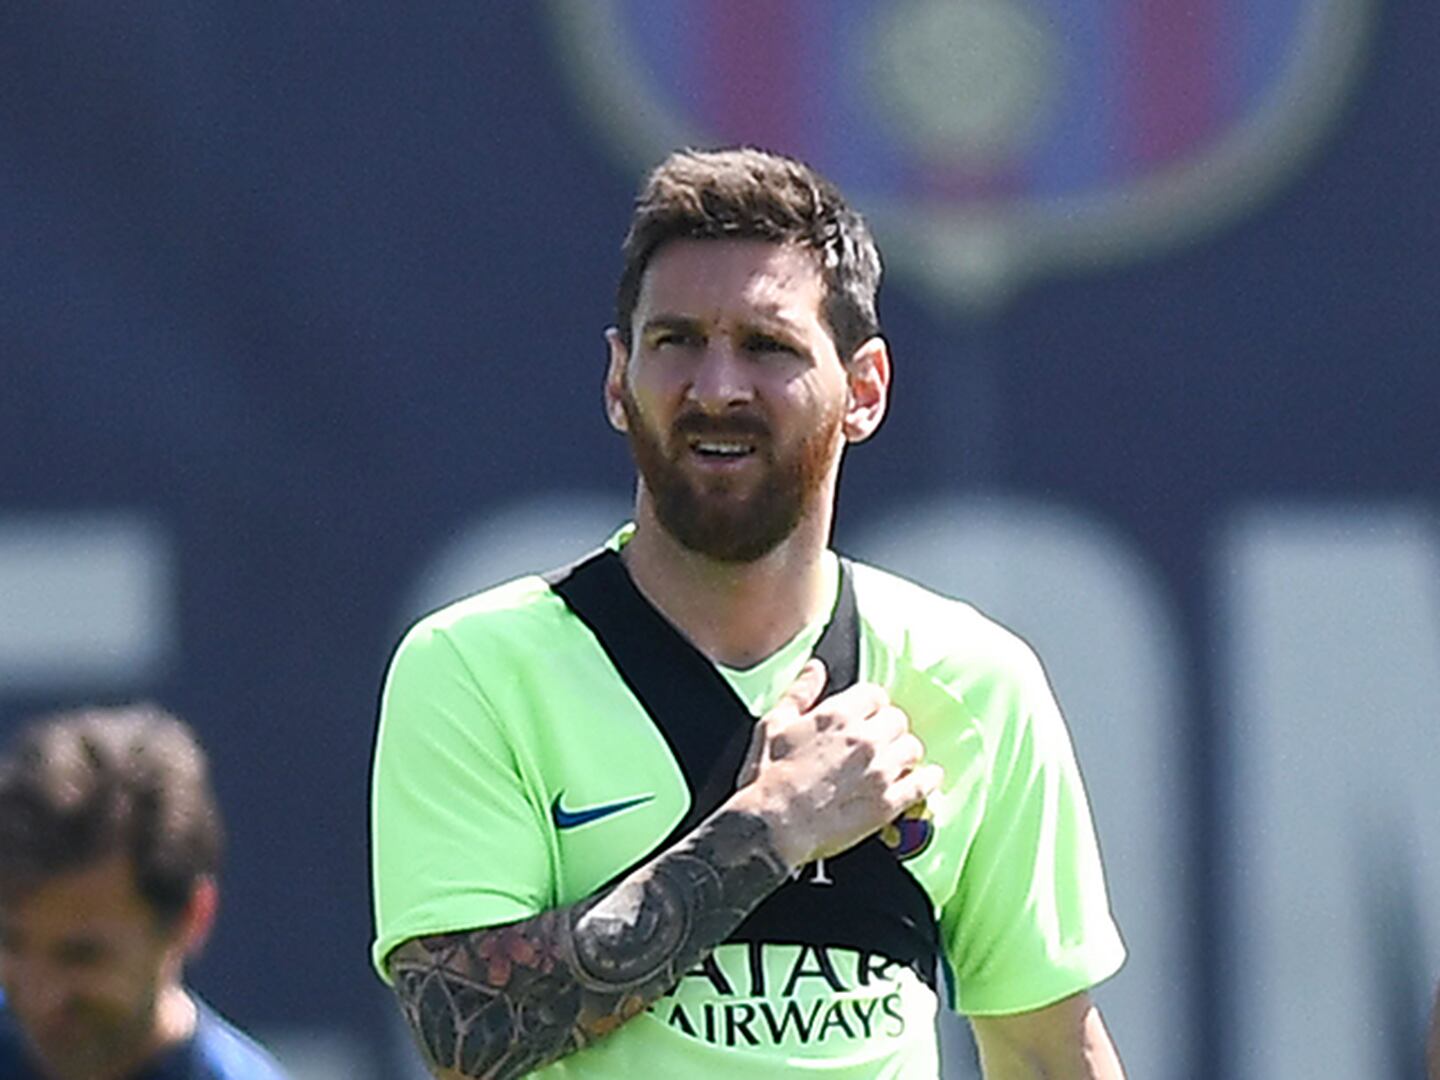 La opinión de Messi sobre Valverde, el nuevo técnico de Barcelona